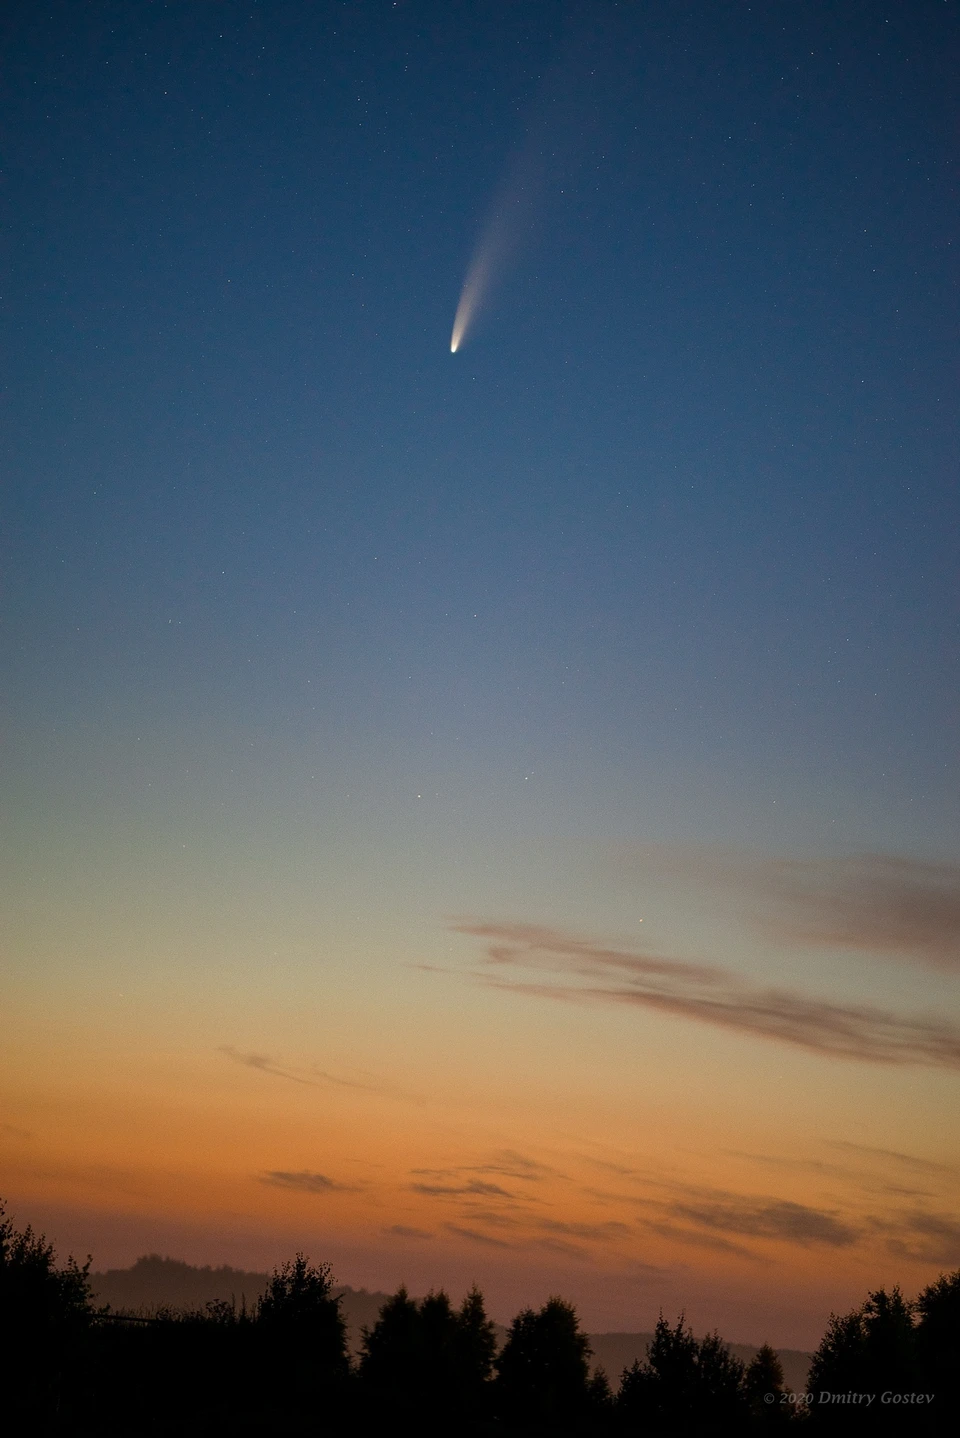 Автор снимка сообщил,что комету можно будет еще увидеть до конца июля. Фото: Дмитрий Гостев